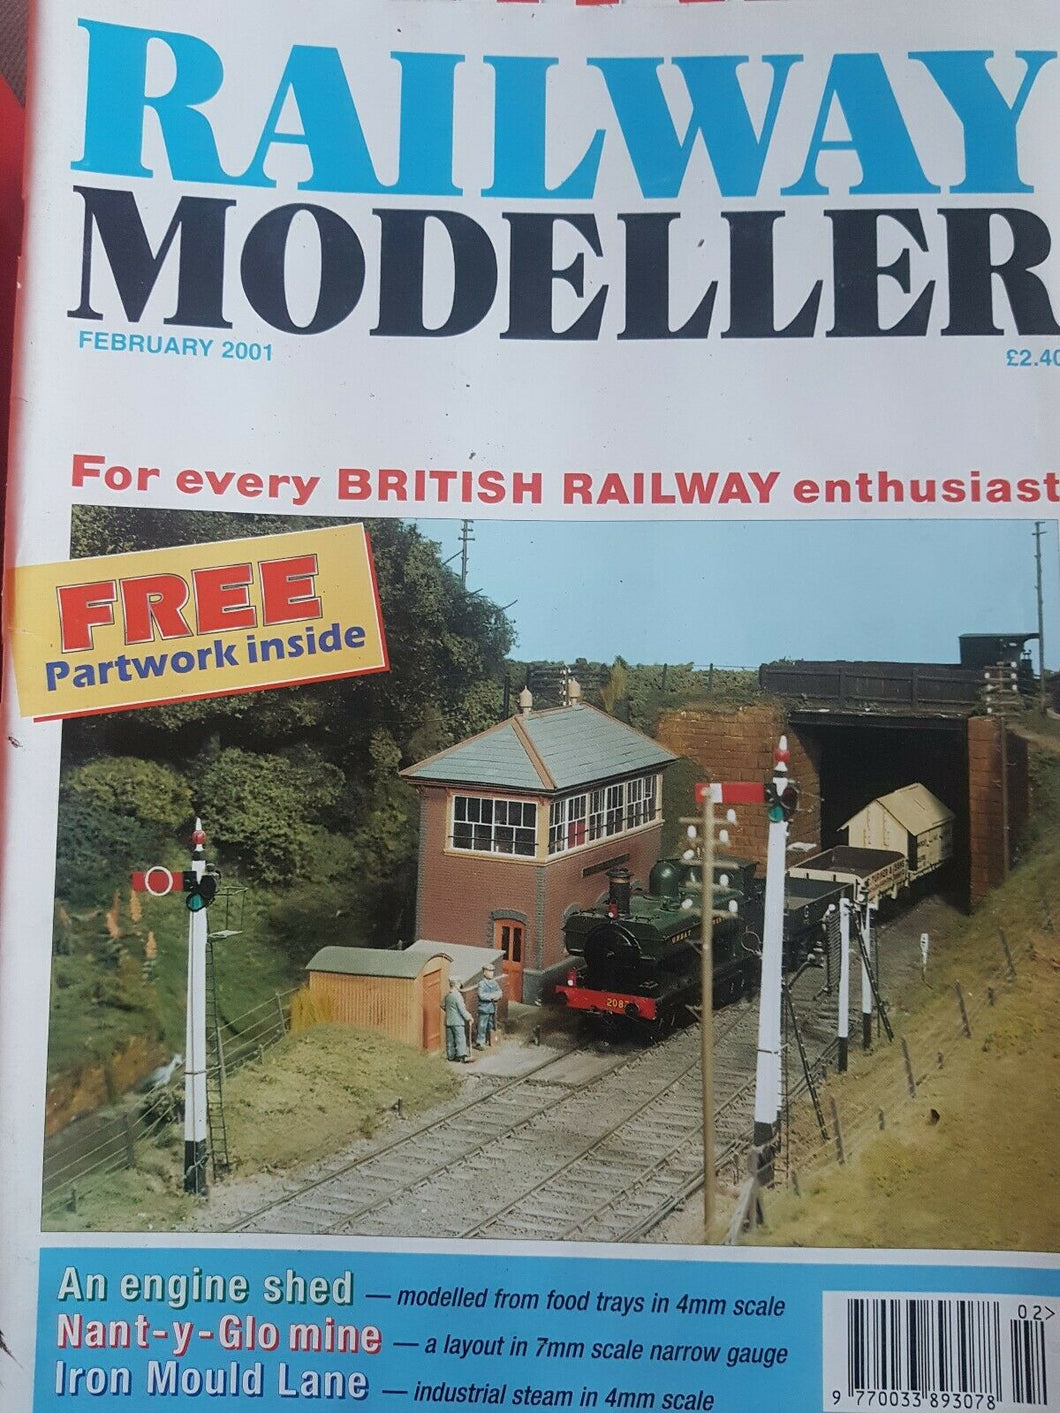 Railway modeller magazine February 2001